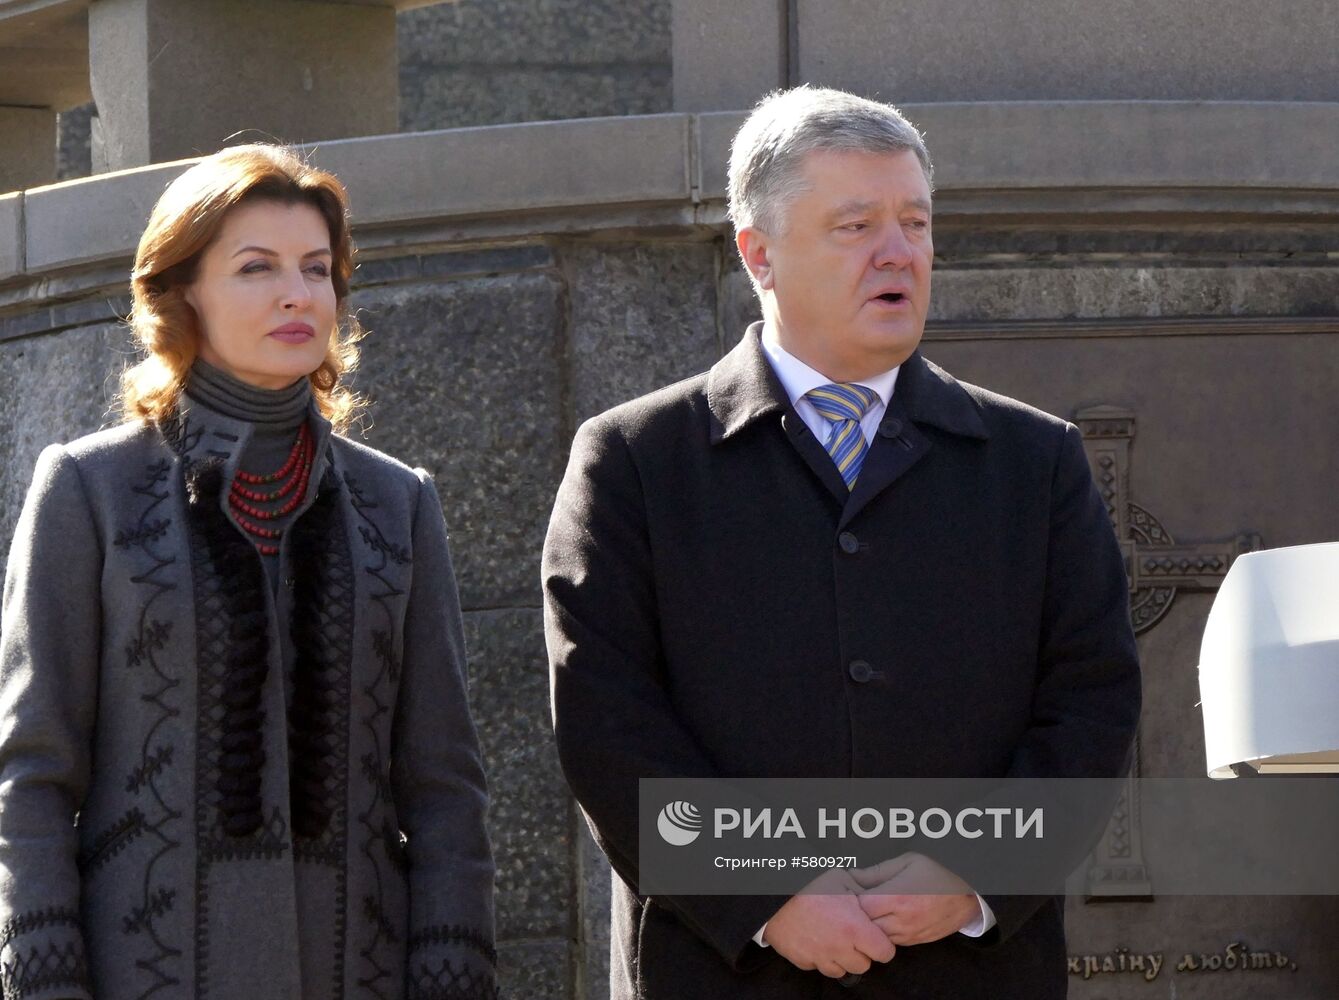 Президент Украины П. Порошенко посетил Черкассы в рамках предвыборной кампании